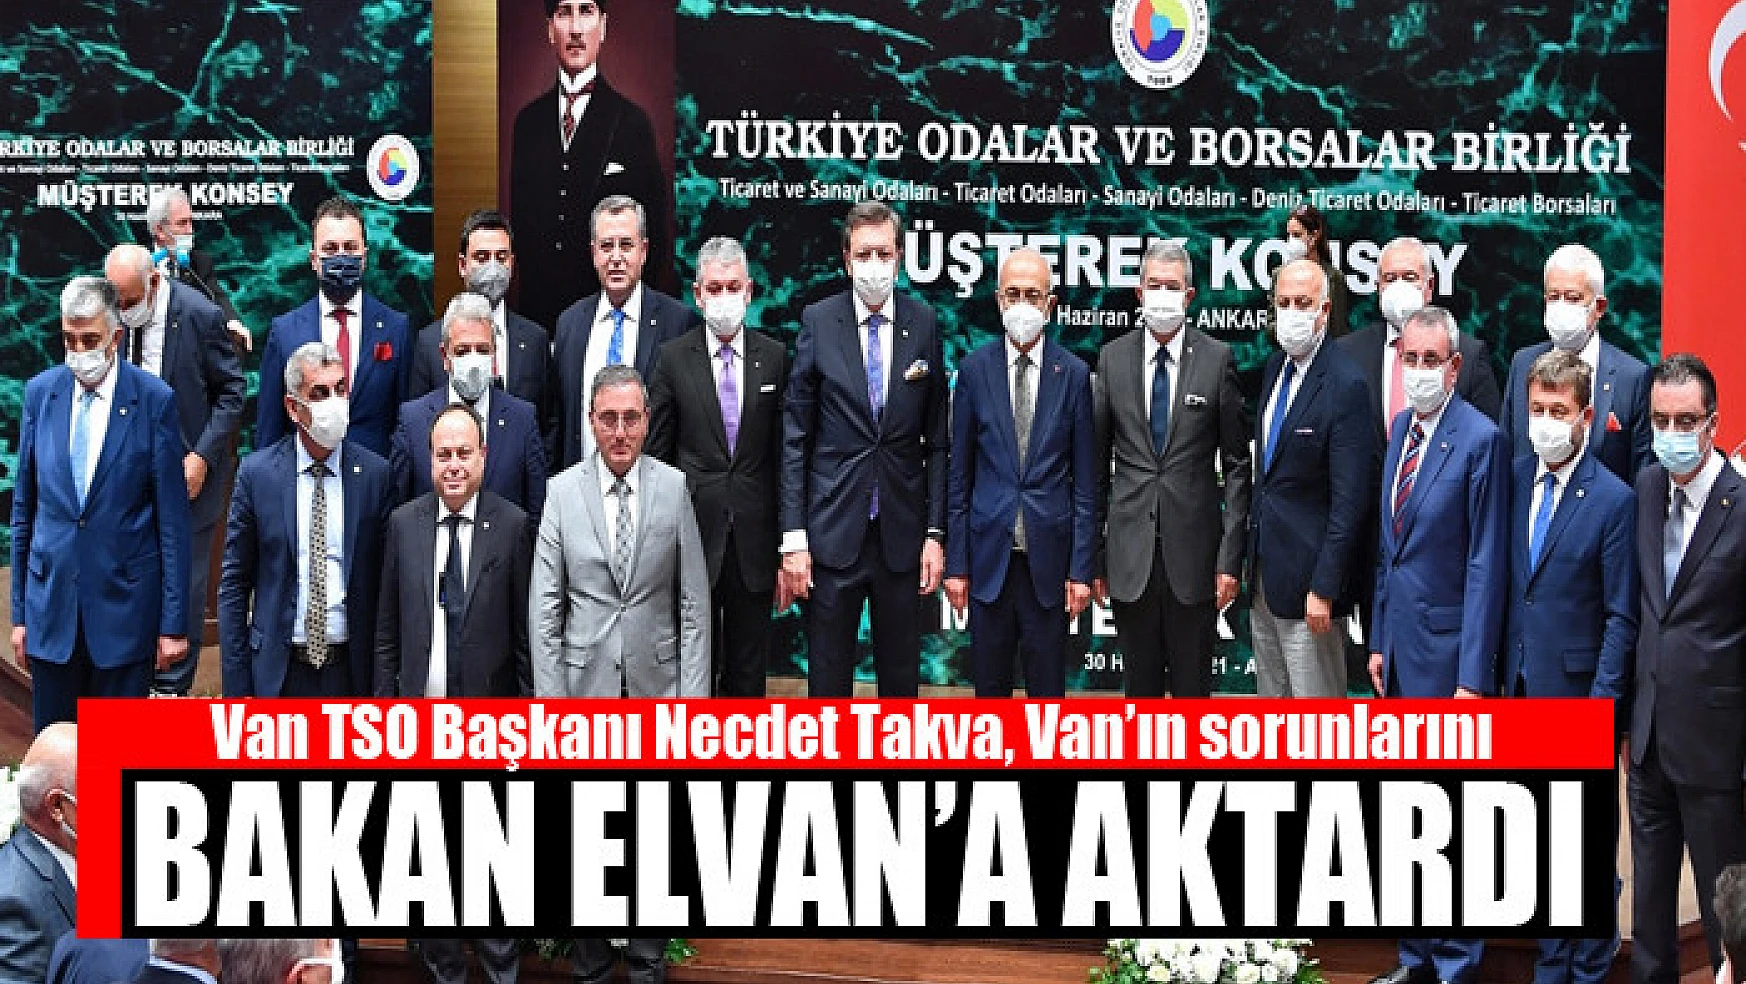 Van TSO Başkanı Takva, Van'ın sorunlarını Bakan Elvan'a aktardı